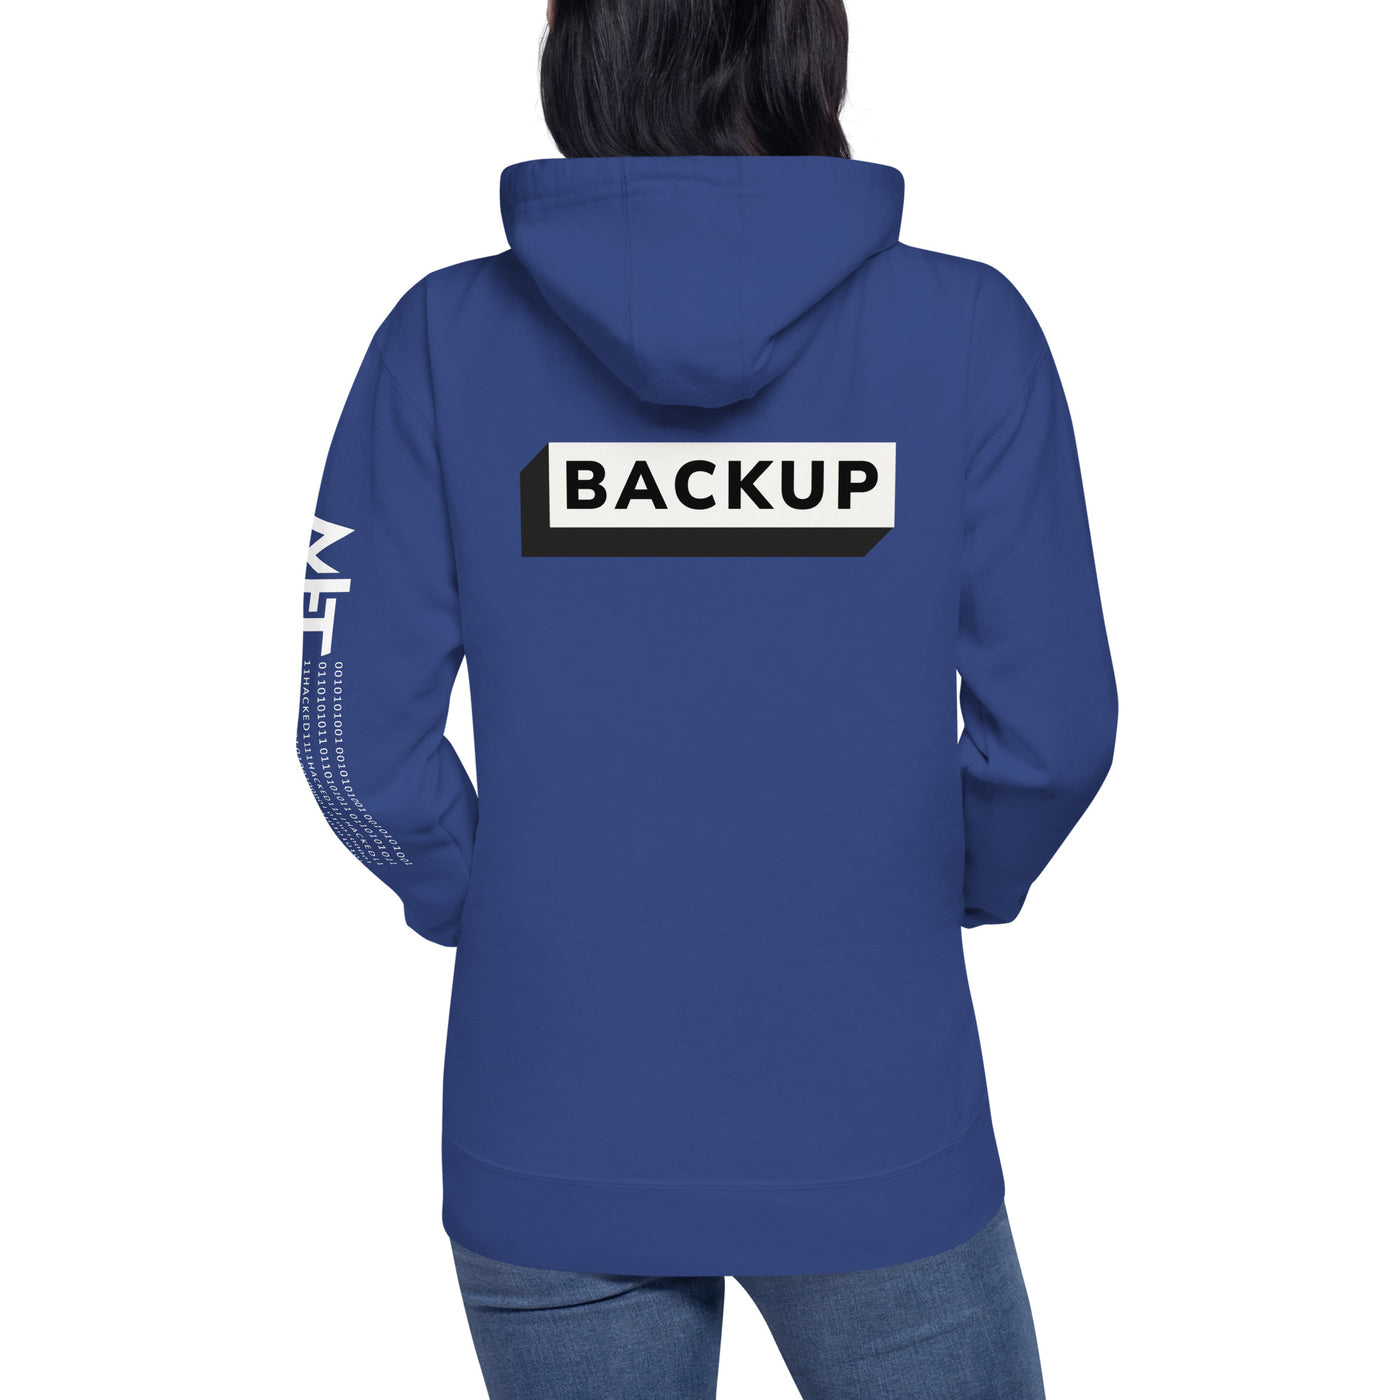 Backup - Unisex Hoodie (back print)